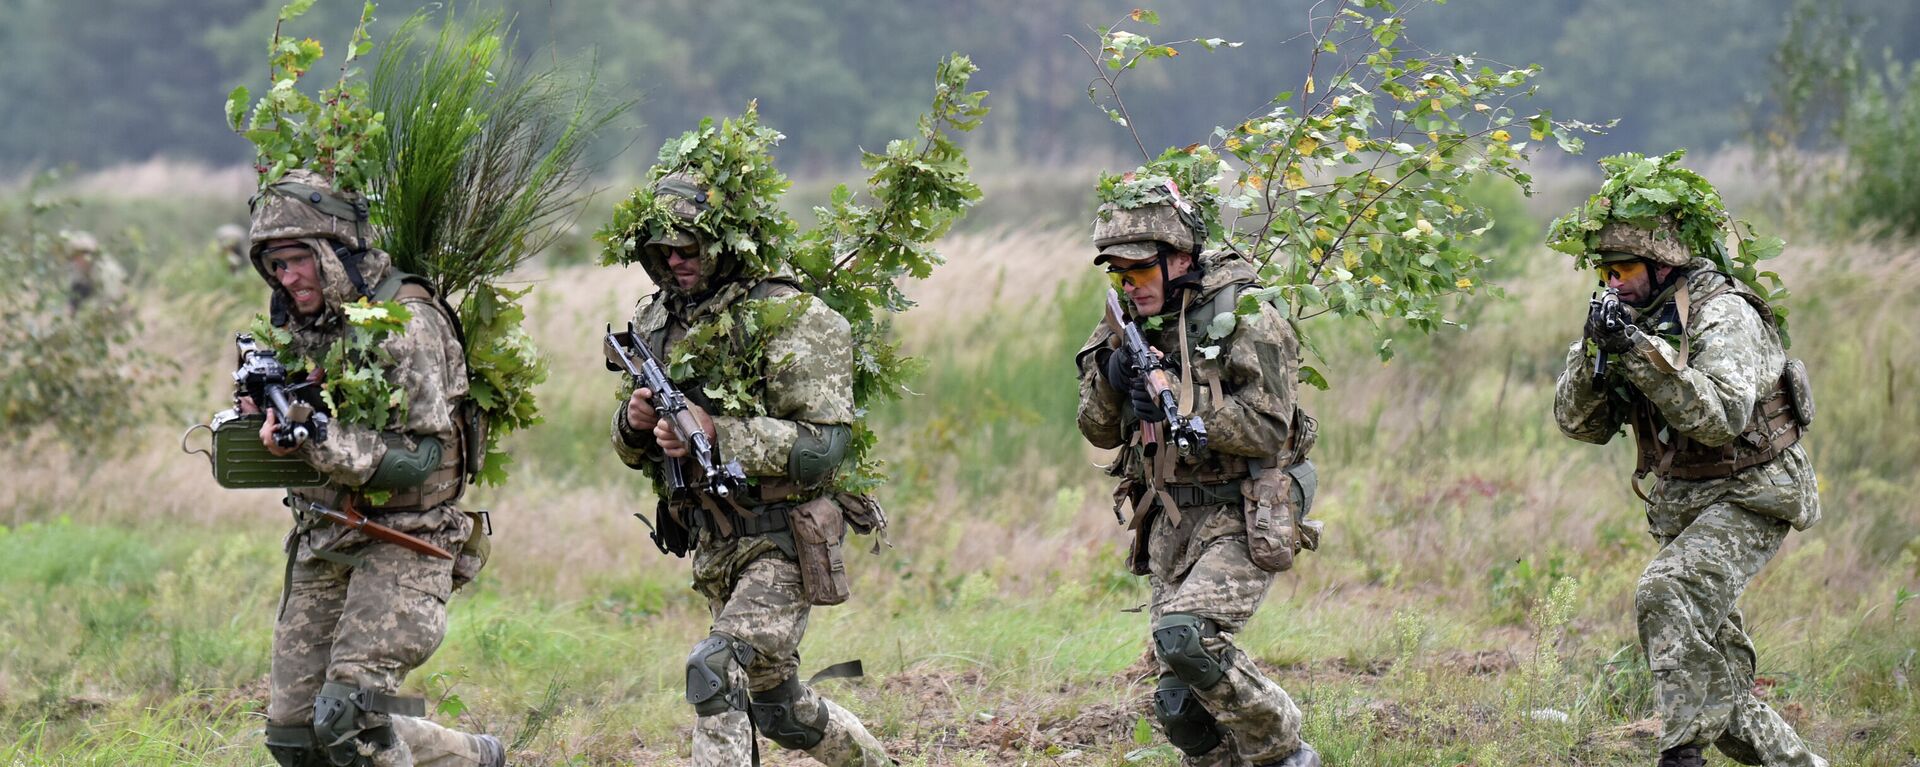 Soldados participam de um exercício no campo de treinamento militar de Yavoriv, perto de Lvov, Ucrânia Ocidental, sexta-feira, 24 de setembro de 2021 - Sputnik Brasil, 1920, 05.02.2022